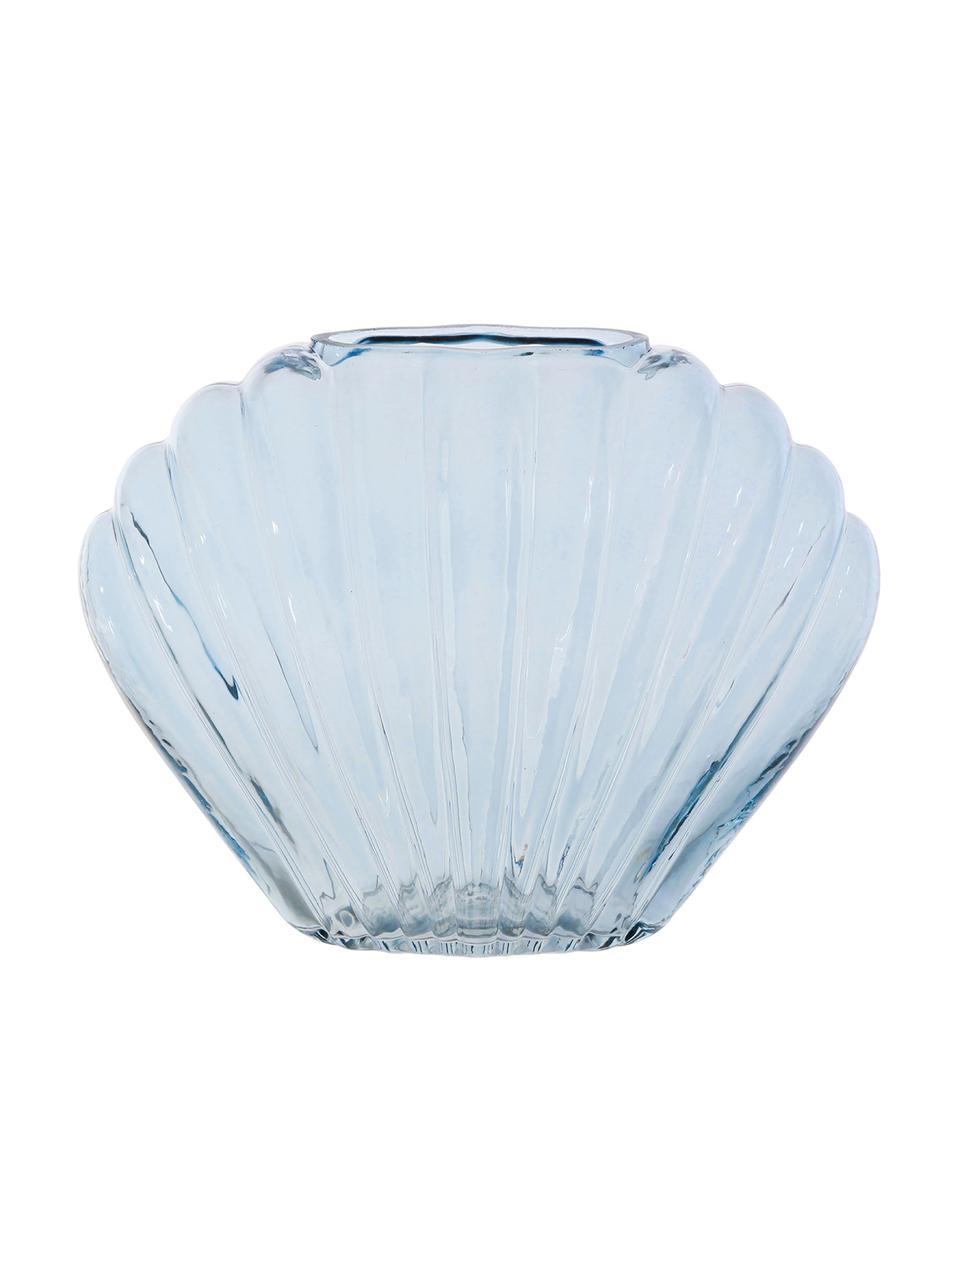 Vase en verre teinté bleu Leucie, Verre, Bleu, transparent, larg. 28 x haut. 22 cm